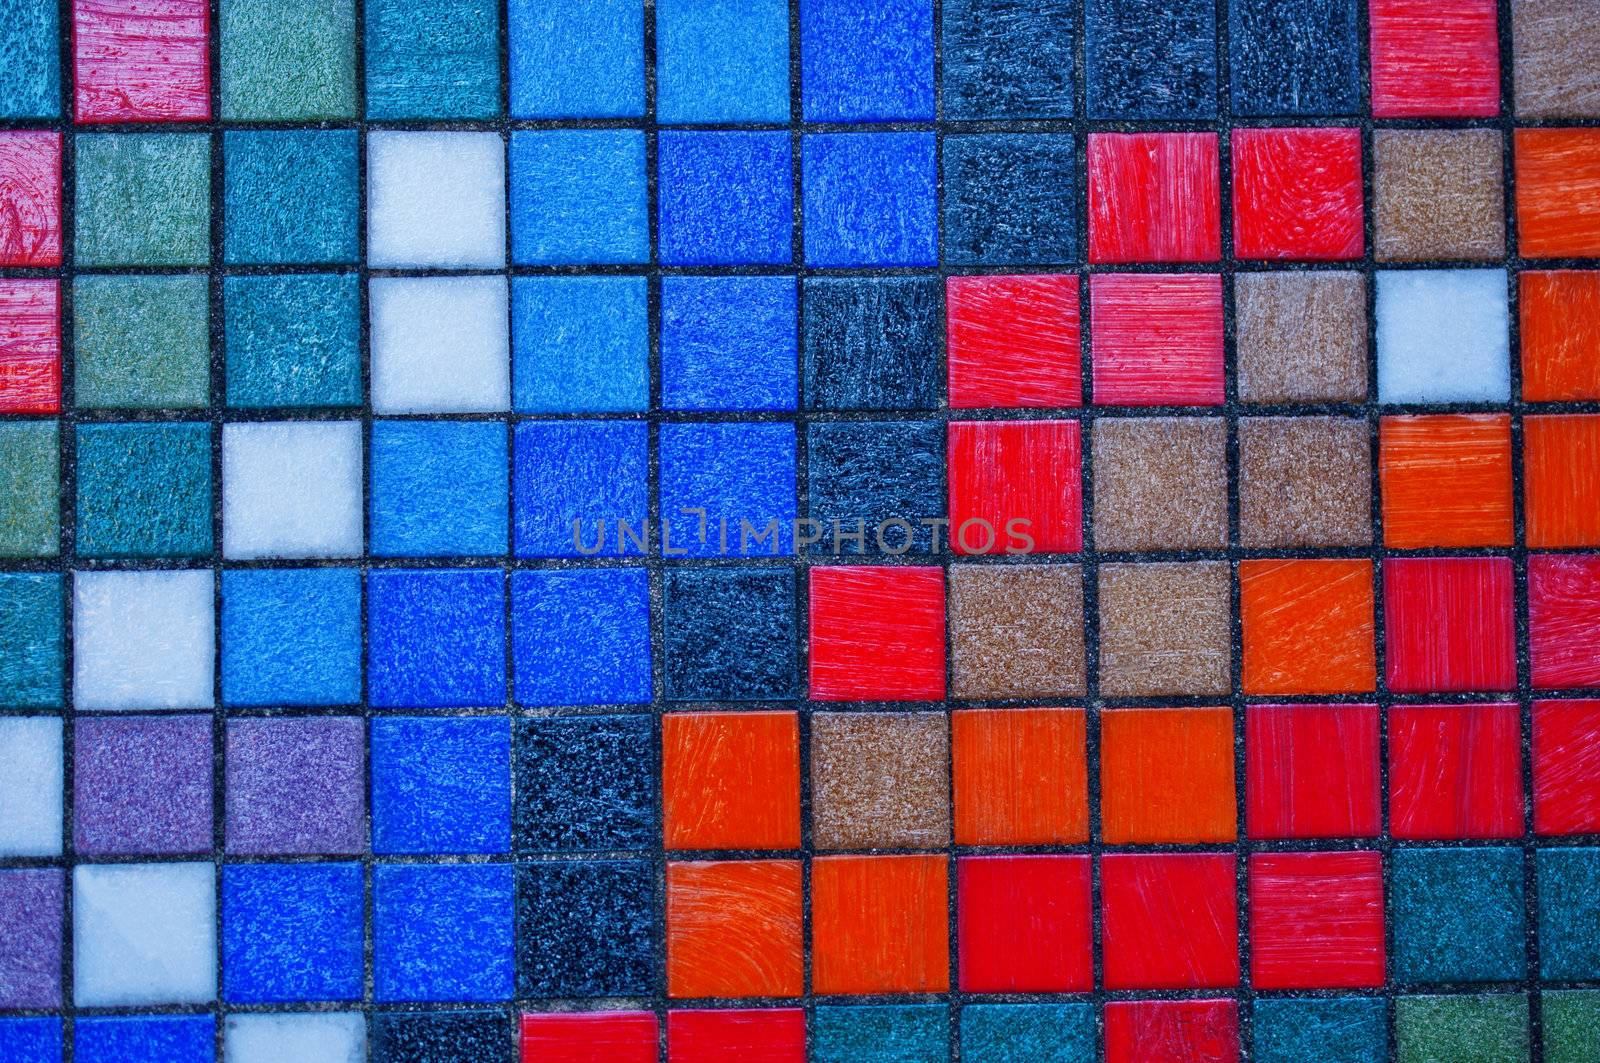 Colorful tiles by Nanisimova